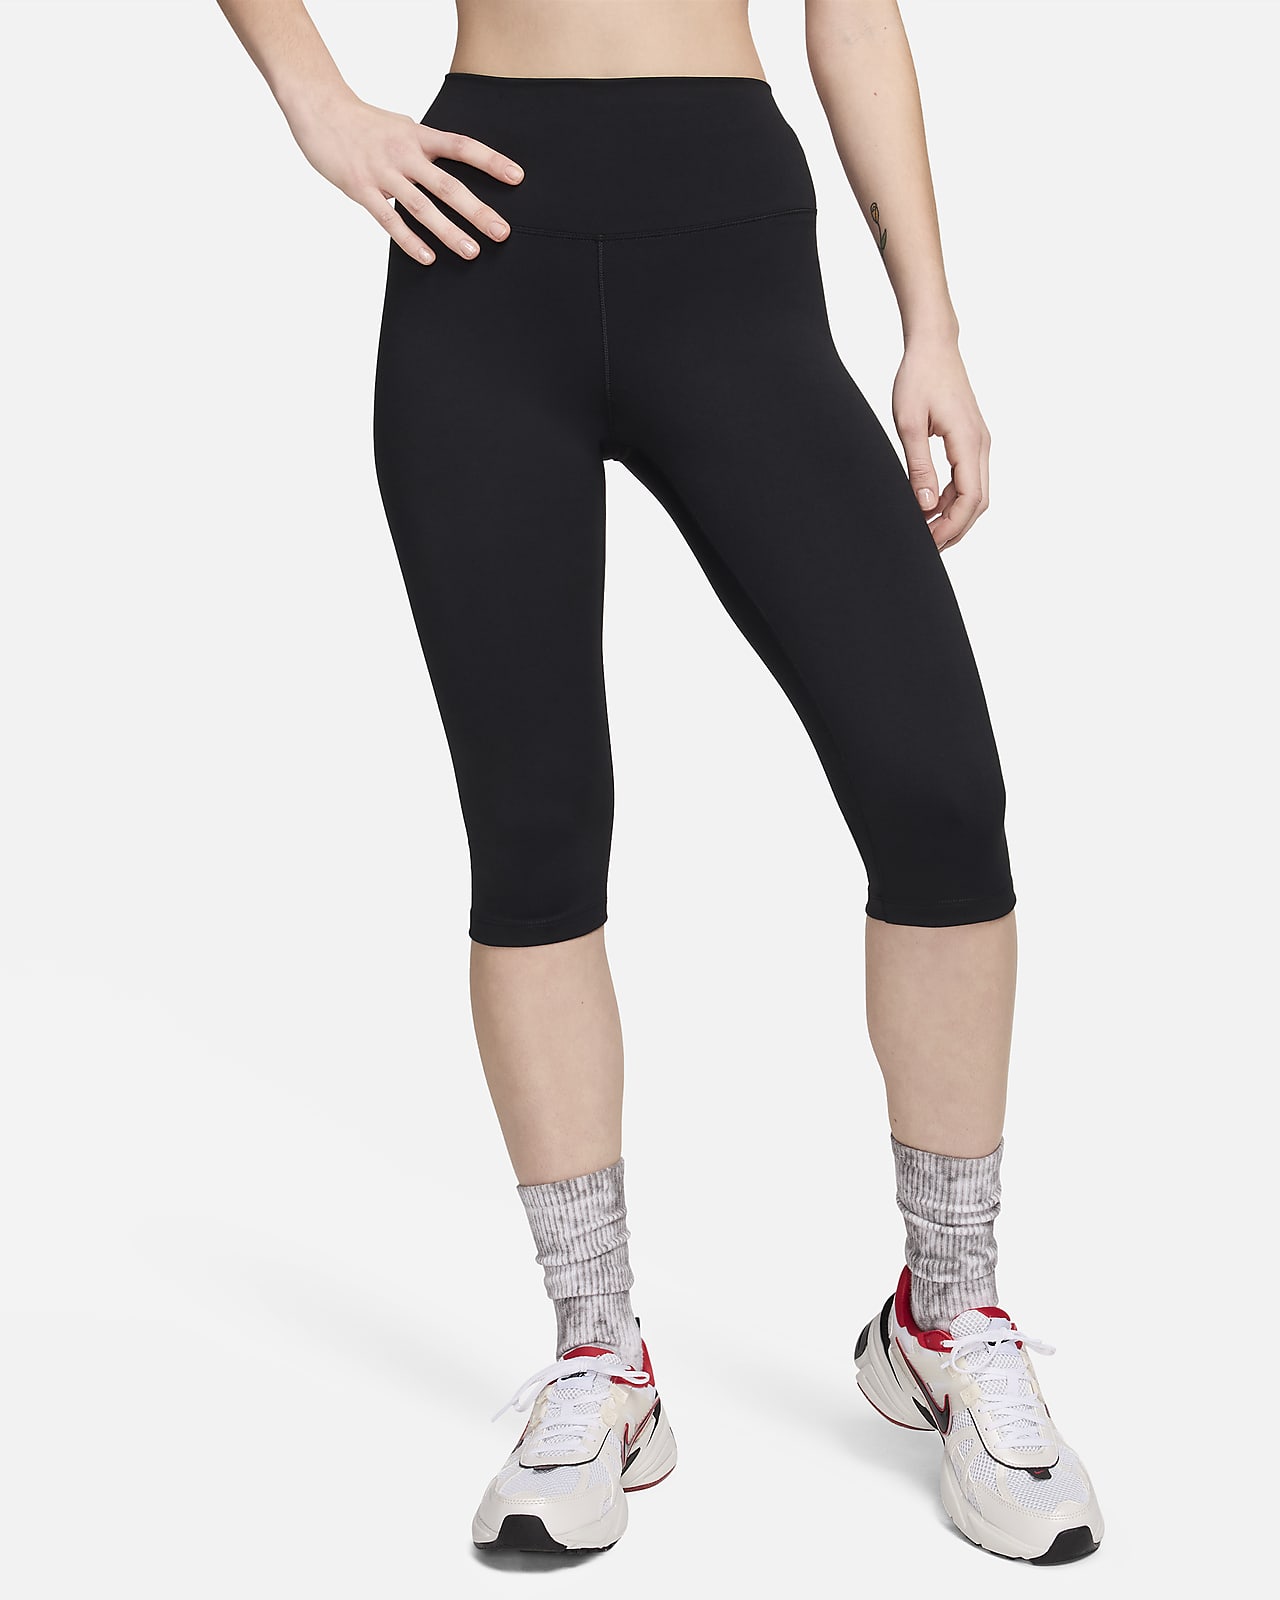 Legging corsaire taille haute Nike One pour femme